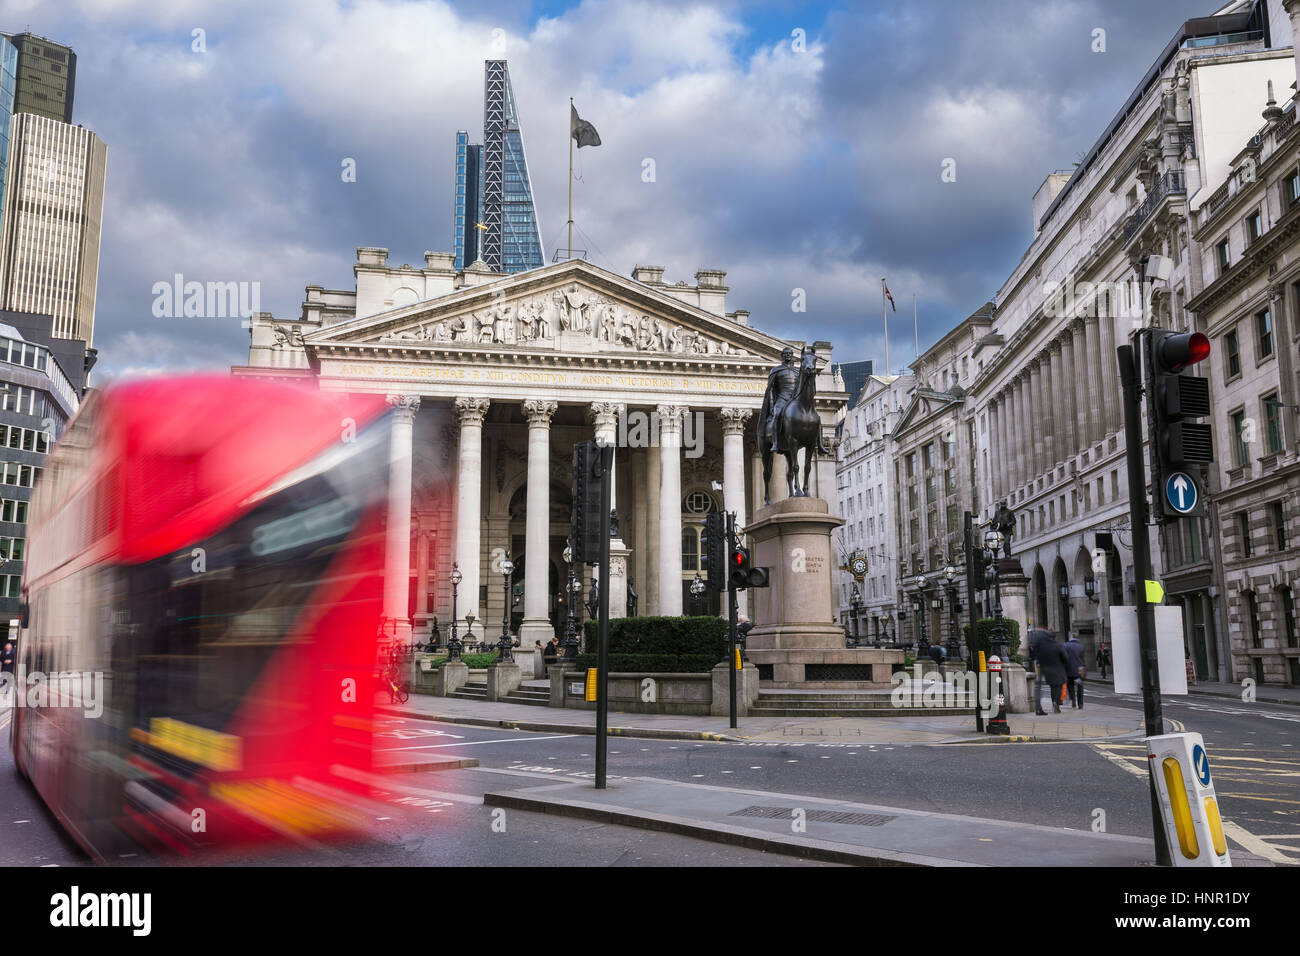 Londra, Inghilterra - Royal Echnage edificio con spostamento bus rosso a due piani Foto Stock